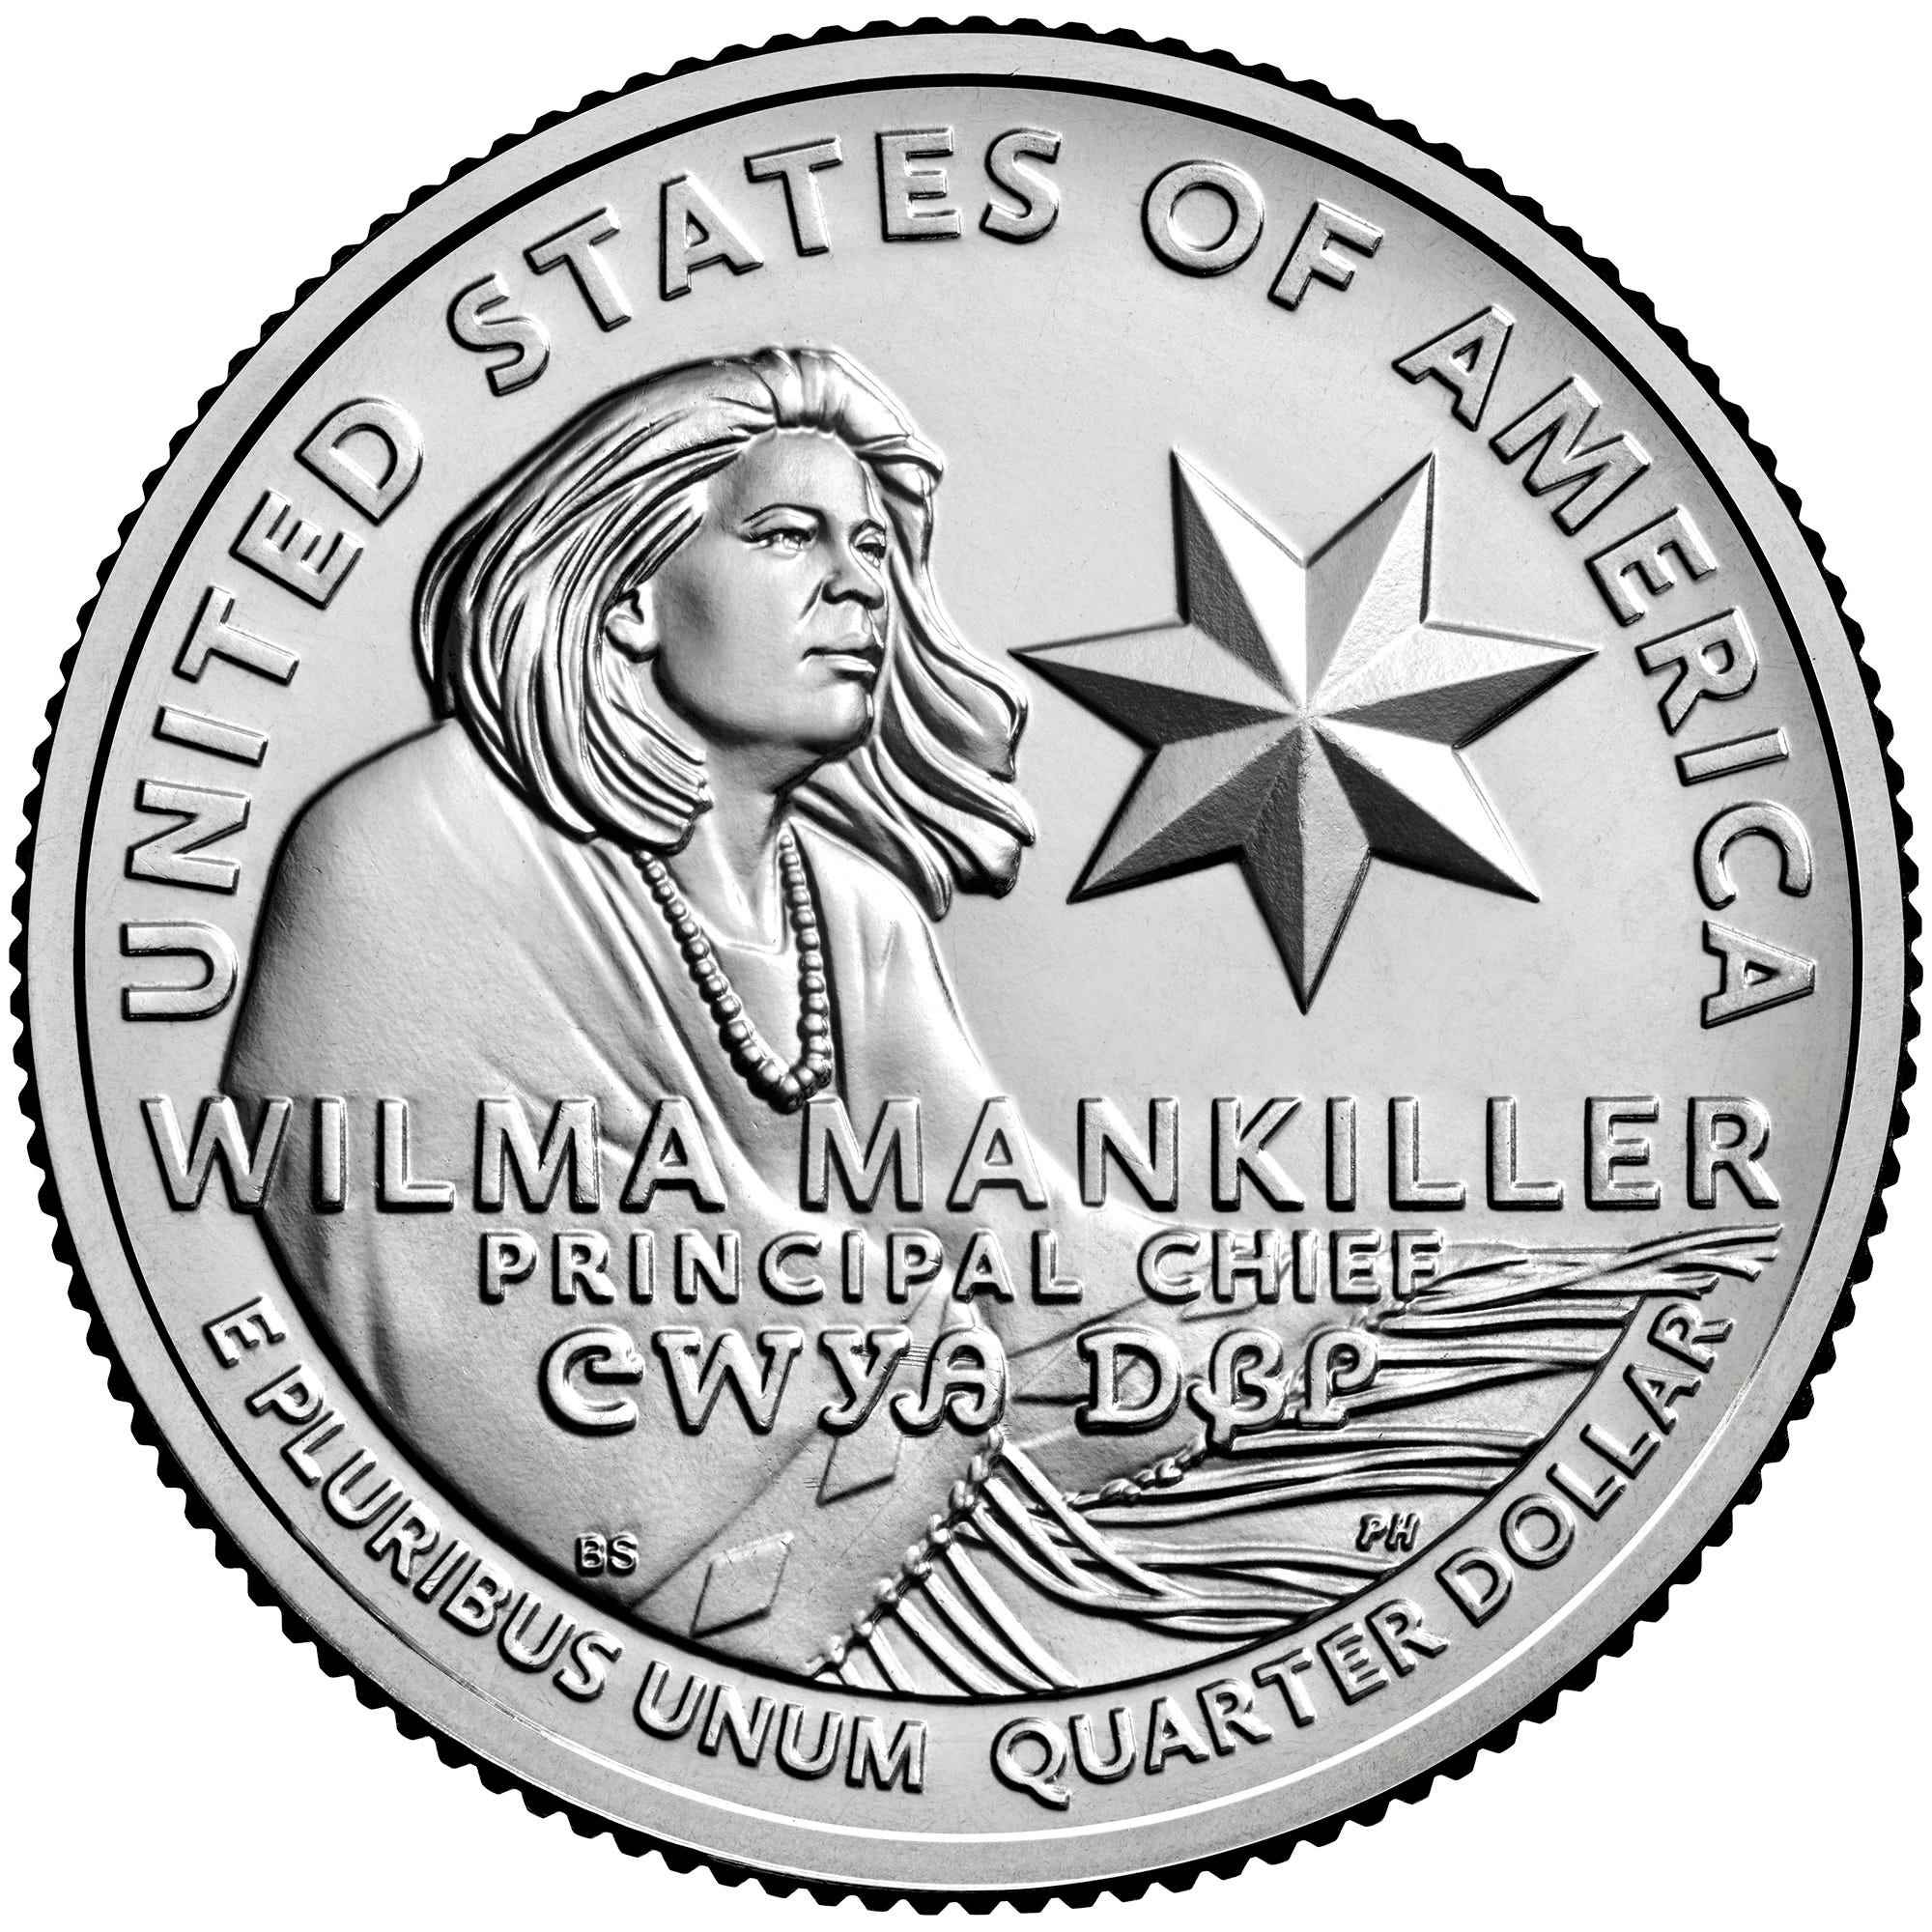 Münzbild der Vereinigten Staaten von der United States Mint